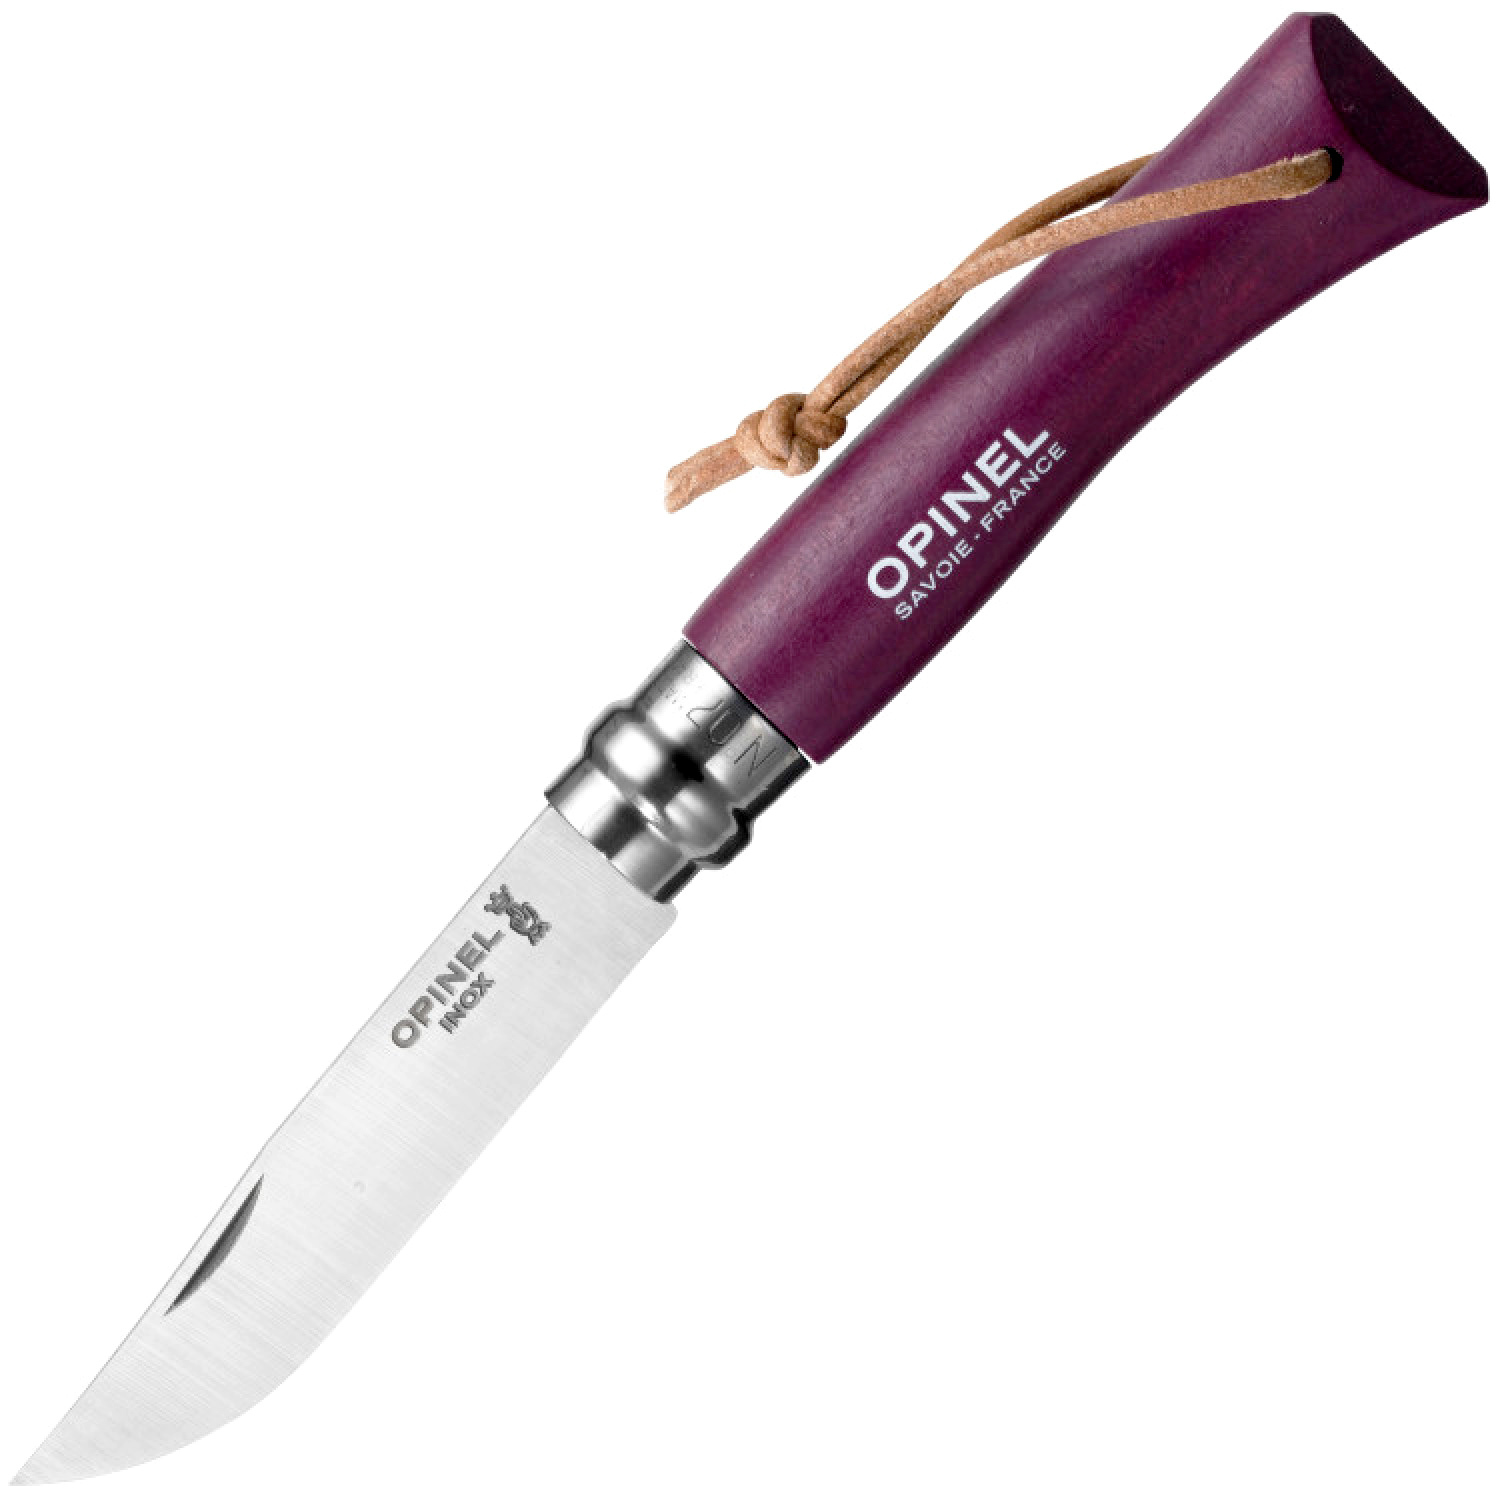 Складной Нож Opinel №7 Trekking,001444, сталь Sandvik 12C27, граб, фиолетовый